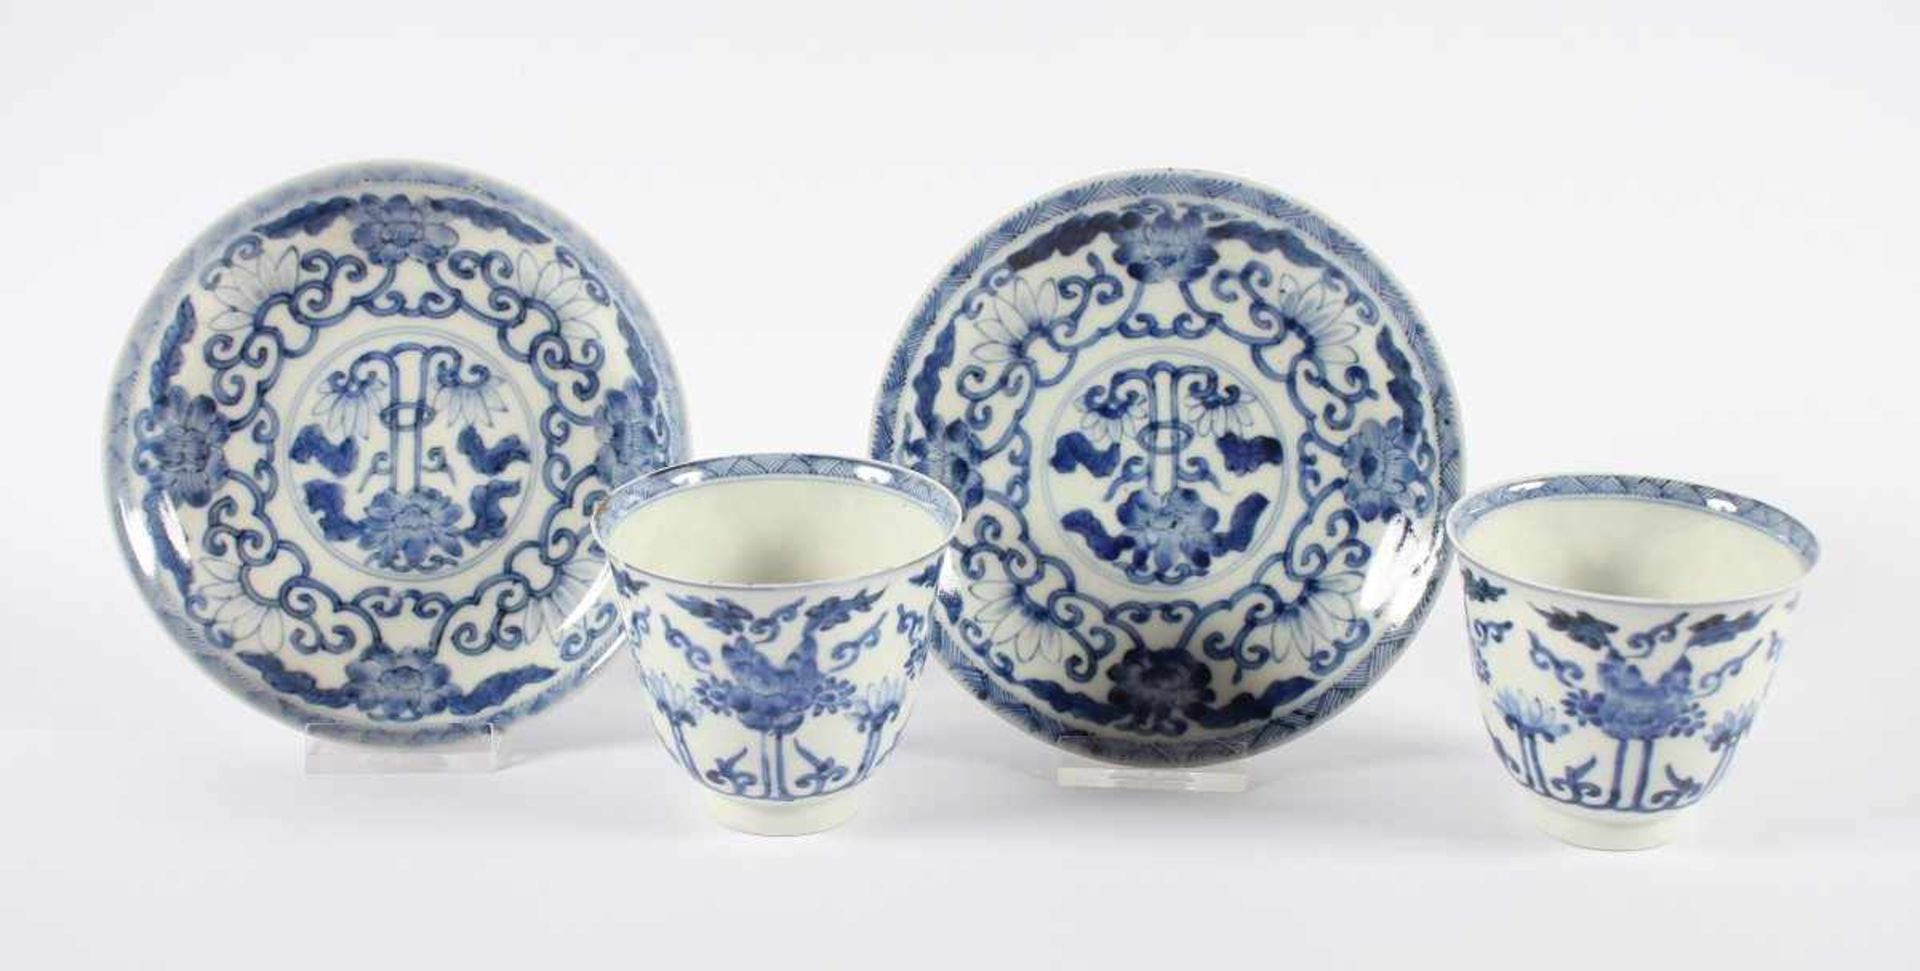 PAAR BLAU-WEISSE BECHER MIT UNTERTASSEN, Porzellan, in Unterglasurblau dekoriert, stilisierte